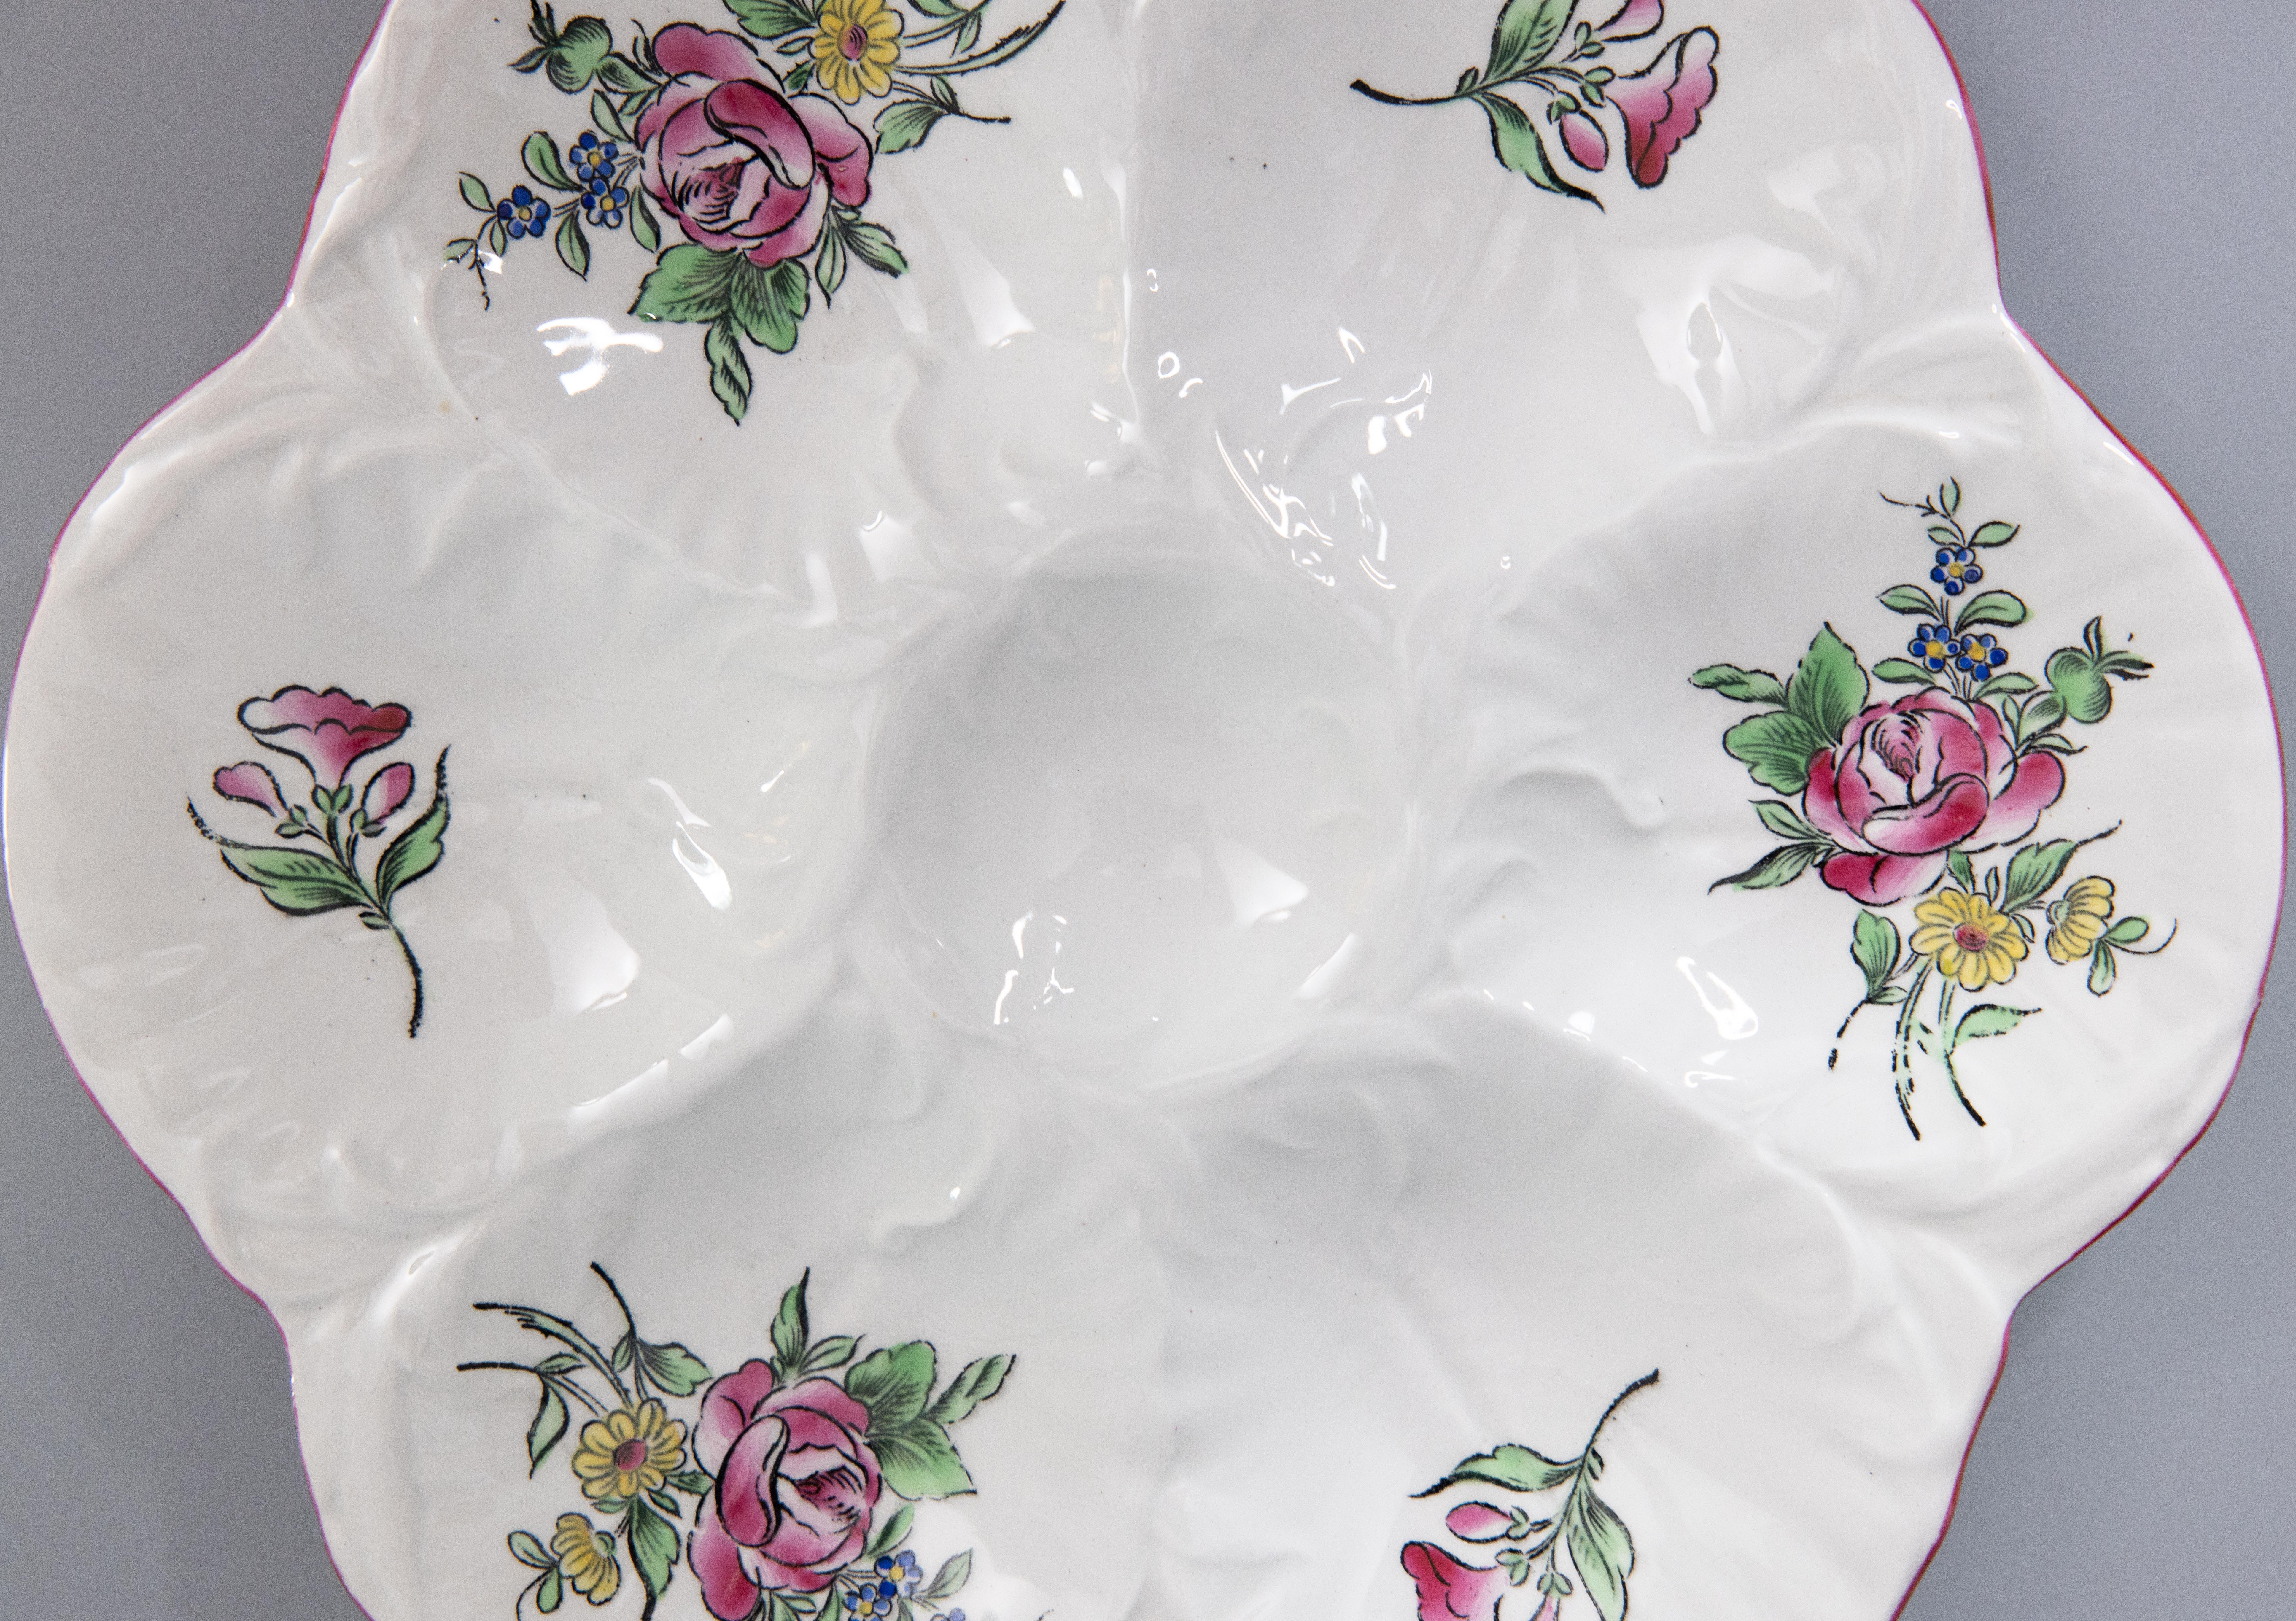 Magnifique assiette à huîtres ancienne en porcelaine fleurie de Keller & Guérin, fabriquée à Luneville, France, vers 1900. Marque du fabricant au verso. Cette assiette à huîtres de qualité supérieure est peinte à la main selon le motif de la vieille